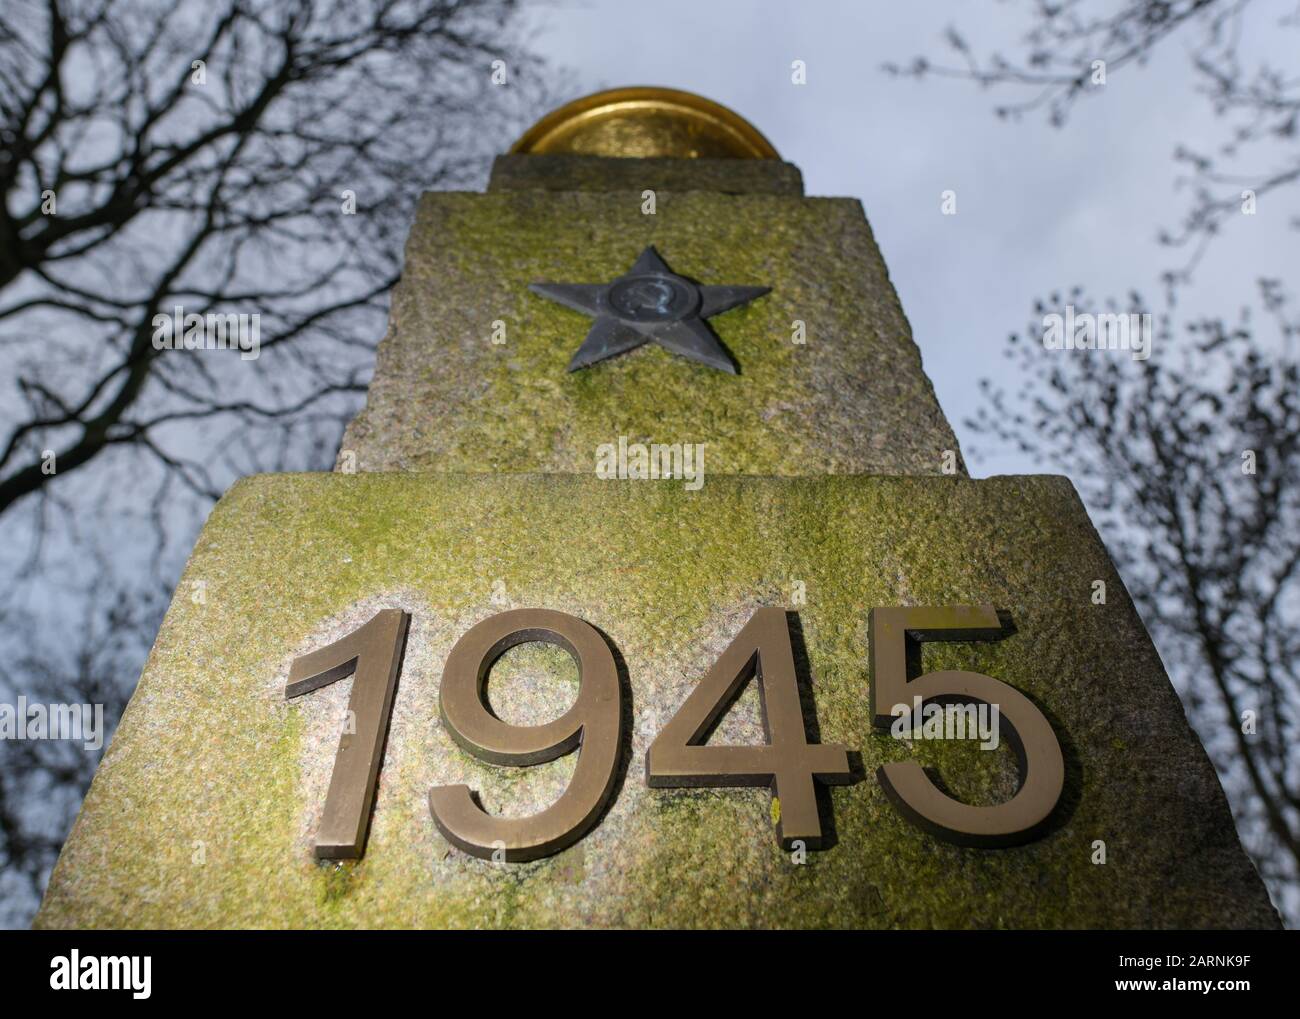 Seelow, Alemania. 29 de enero de 2020. El año 1945 está escrito en una piedra conmemorativa en el cementerio de guerra soviético, el Seelower Höhen Memorial. Poco antes del final de la segunda guerra mundial, decenas de miles de soldados y civiles murieron en la batalla de Seelower Heights al este de Berlín en la mayor batalla de la segunda guerra mundial en suelo alemán. Crédito: Patrick Pleul/dpa-Zentralbild/ZB/dpa/Alamy Live News Foto de stock